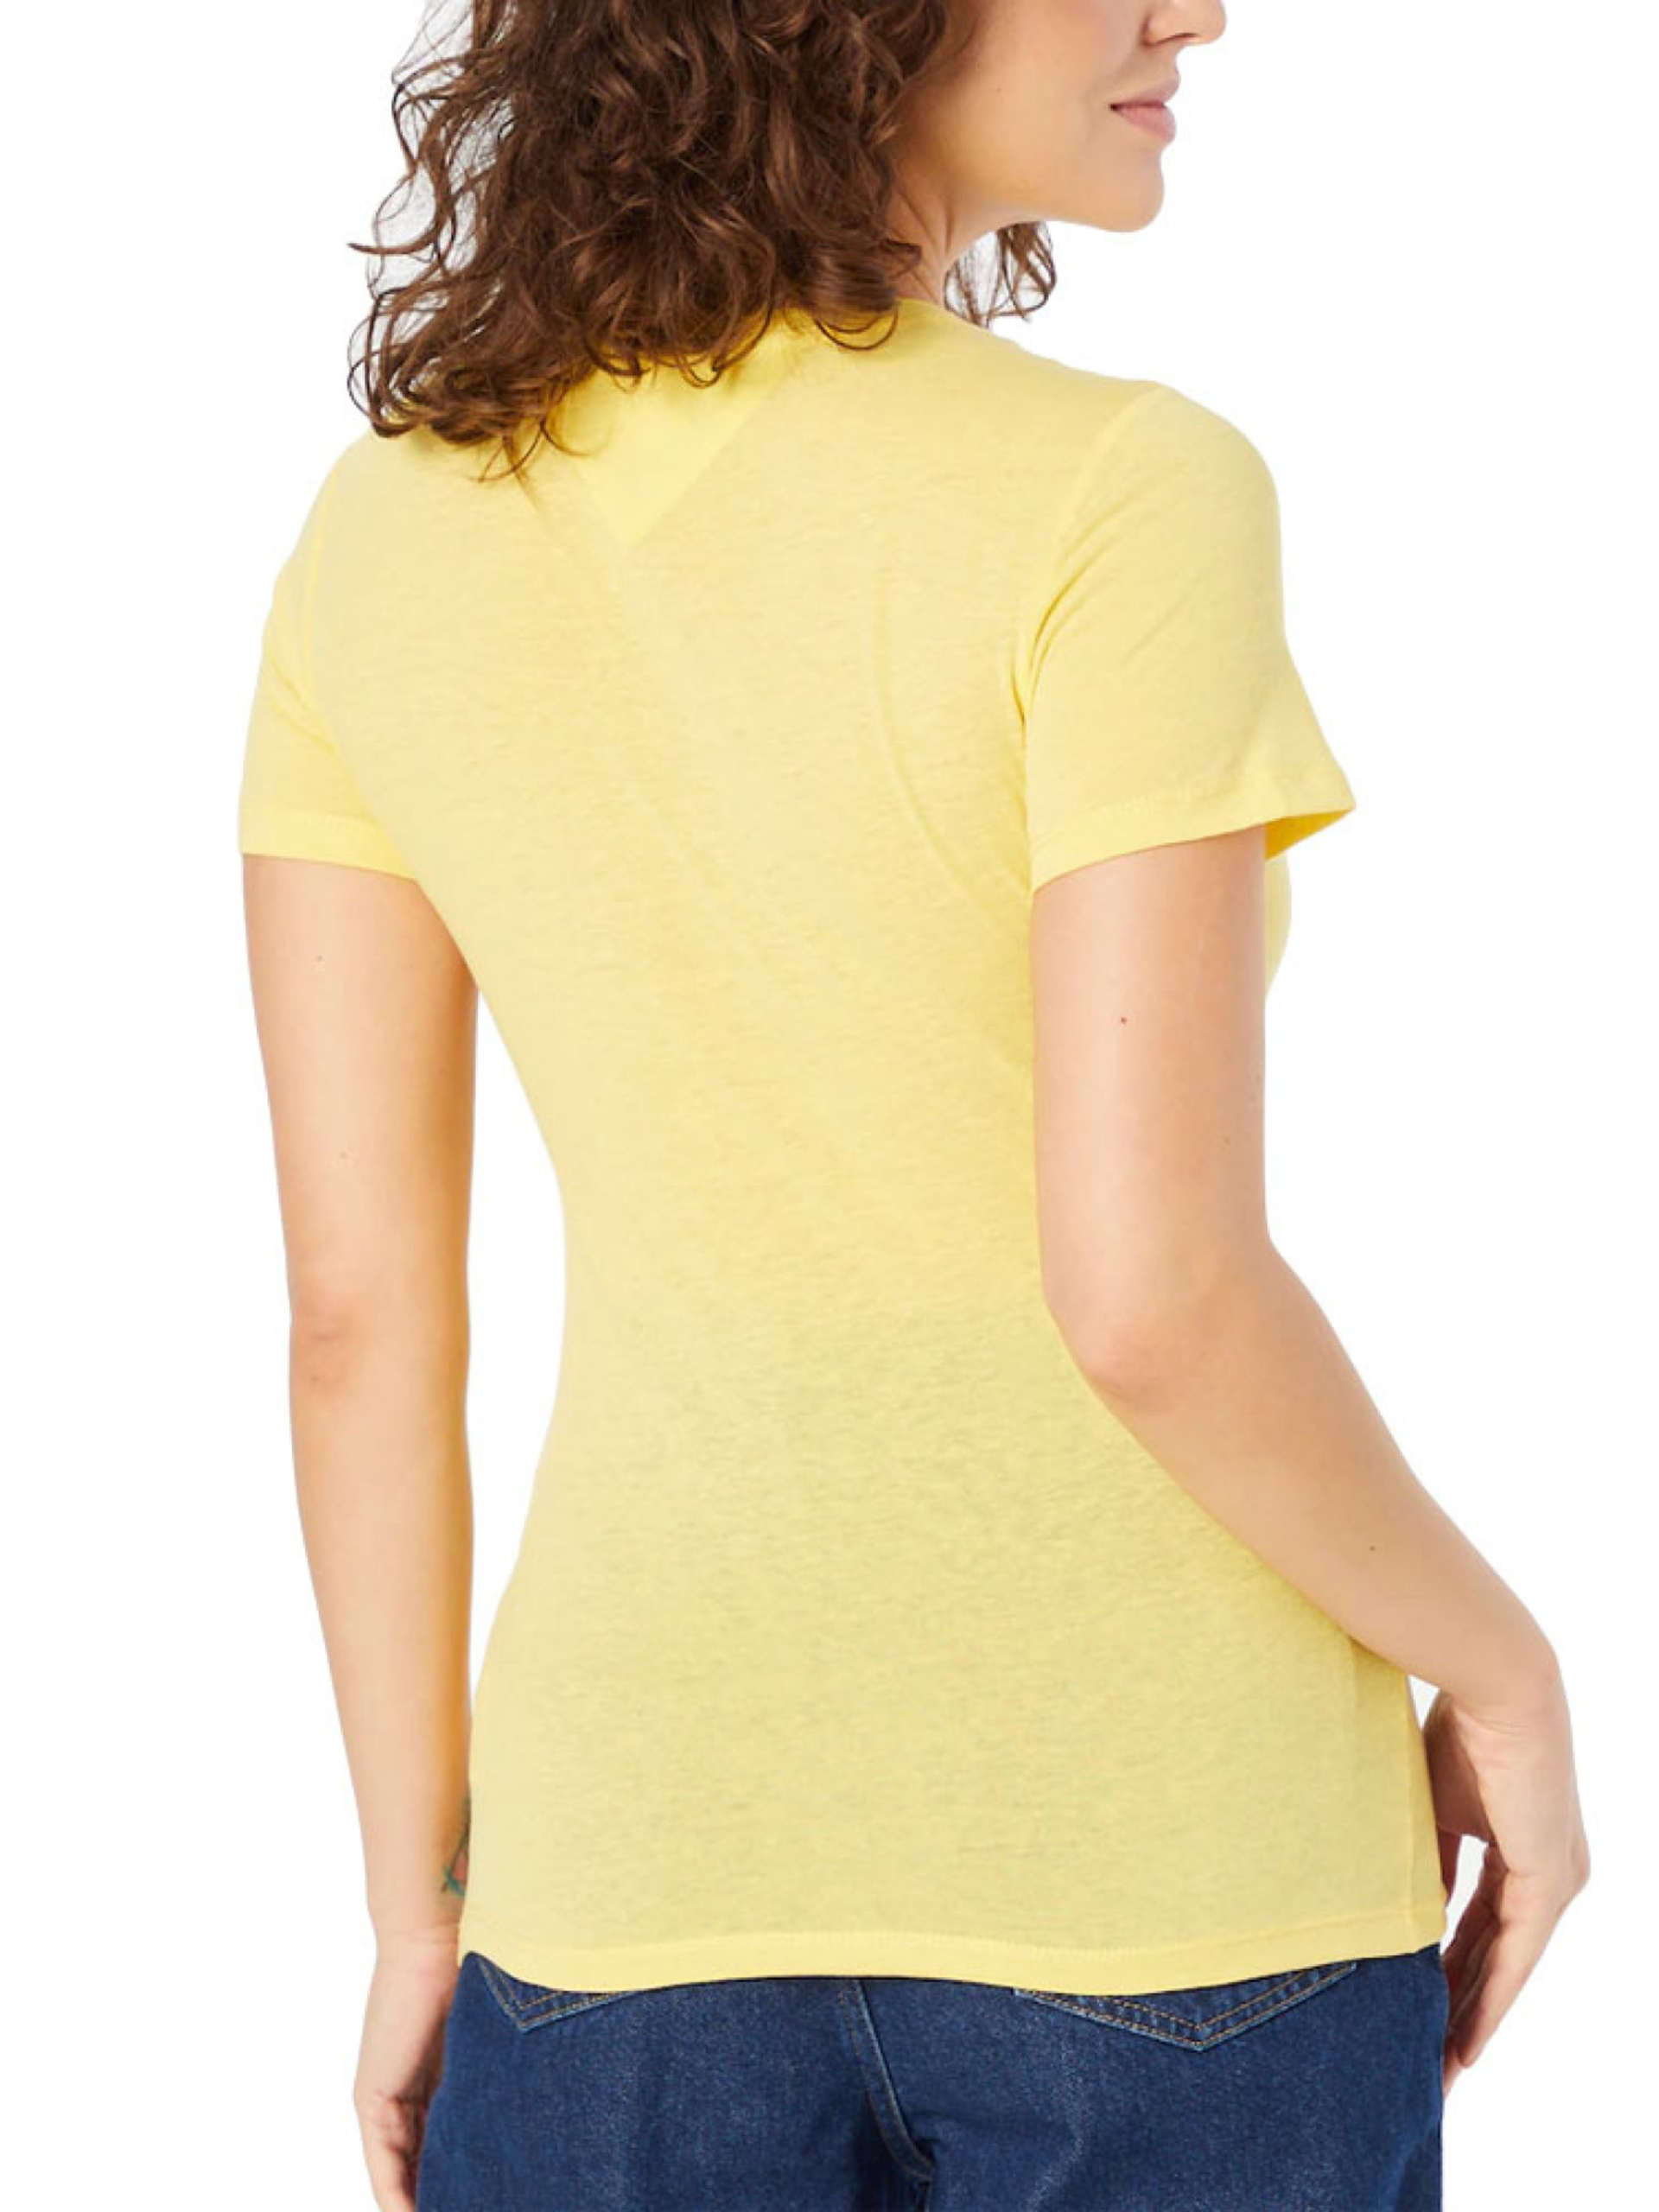 Tommy Jeans dámské žluté tričko - L (ZGF)